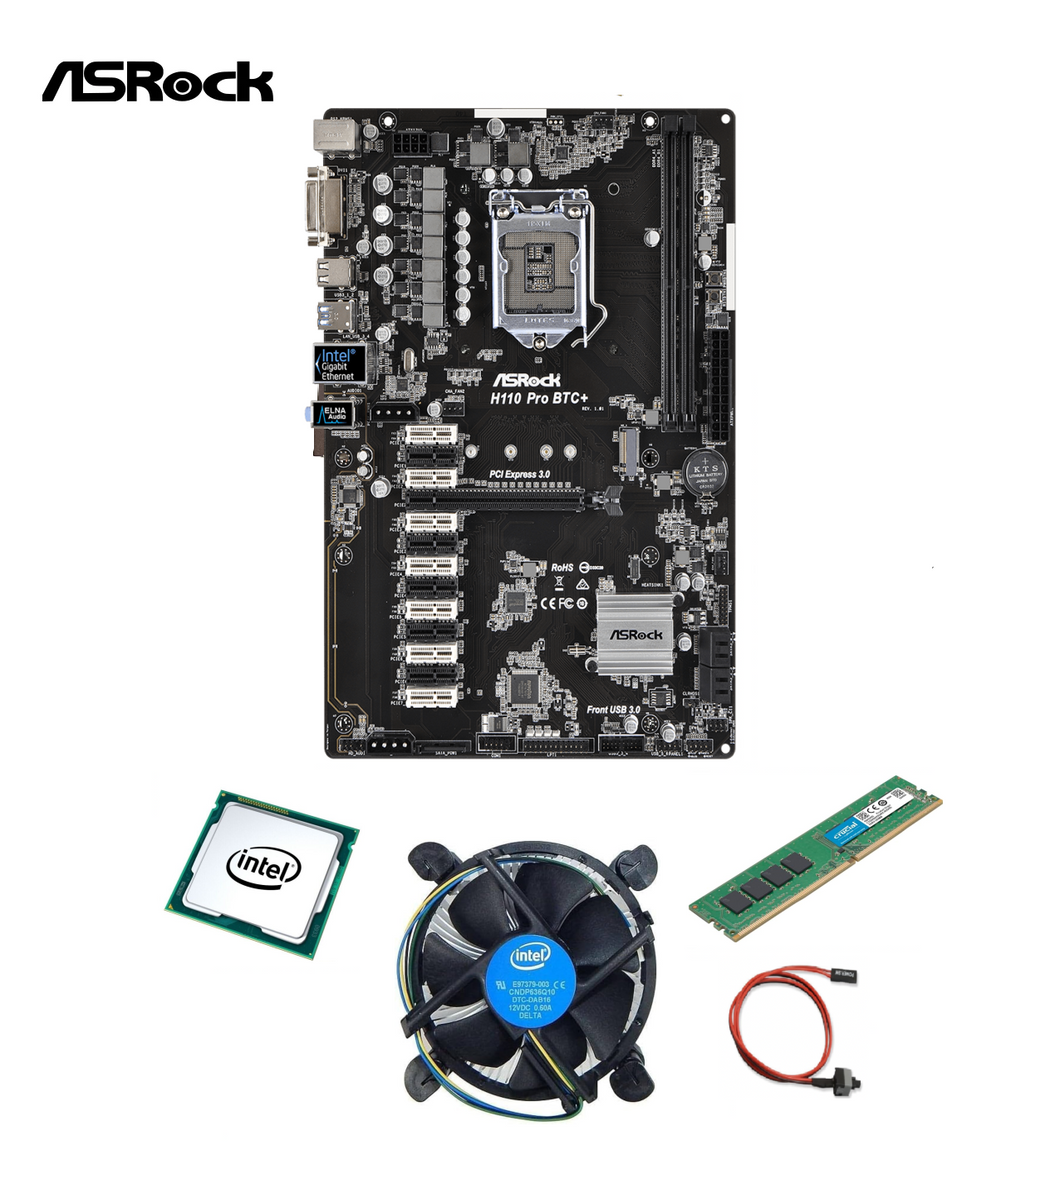 Carte mère ASRock H110 Pro BTC+ LGA 1151 (13 PCI-E)